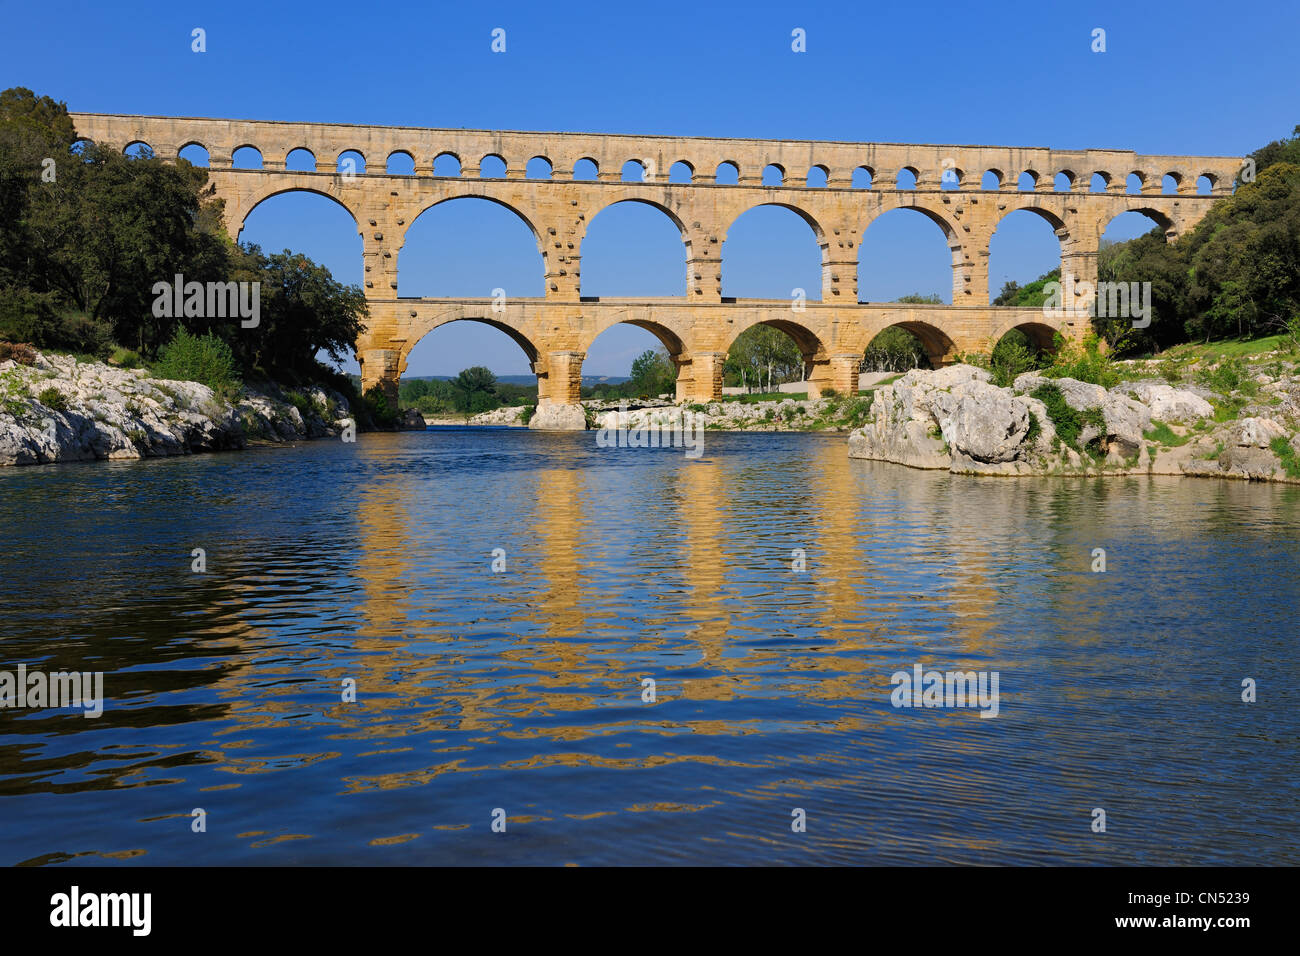 Pont du Gard, Frankreich Gard als Weltkulturerbe der UNESCO, römische Aquädukt über Fluss Gardon aufgeführt Stockfoto